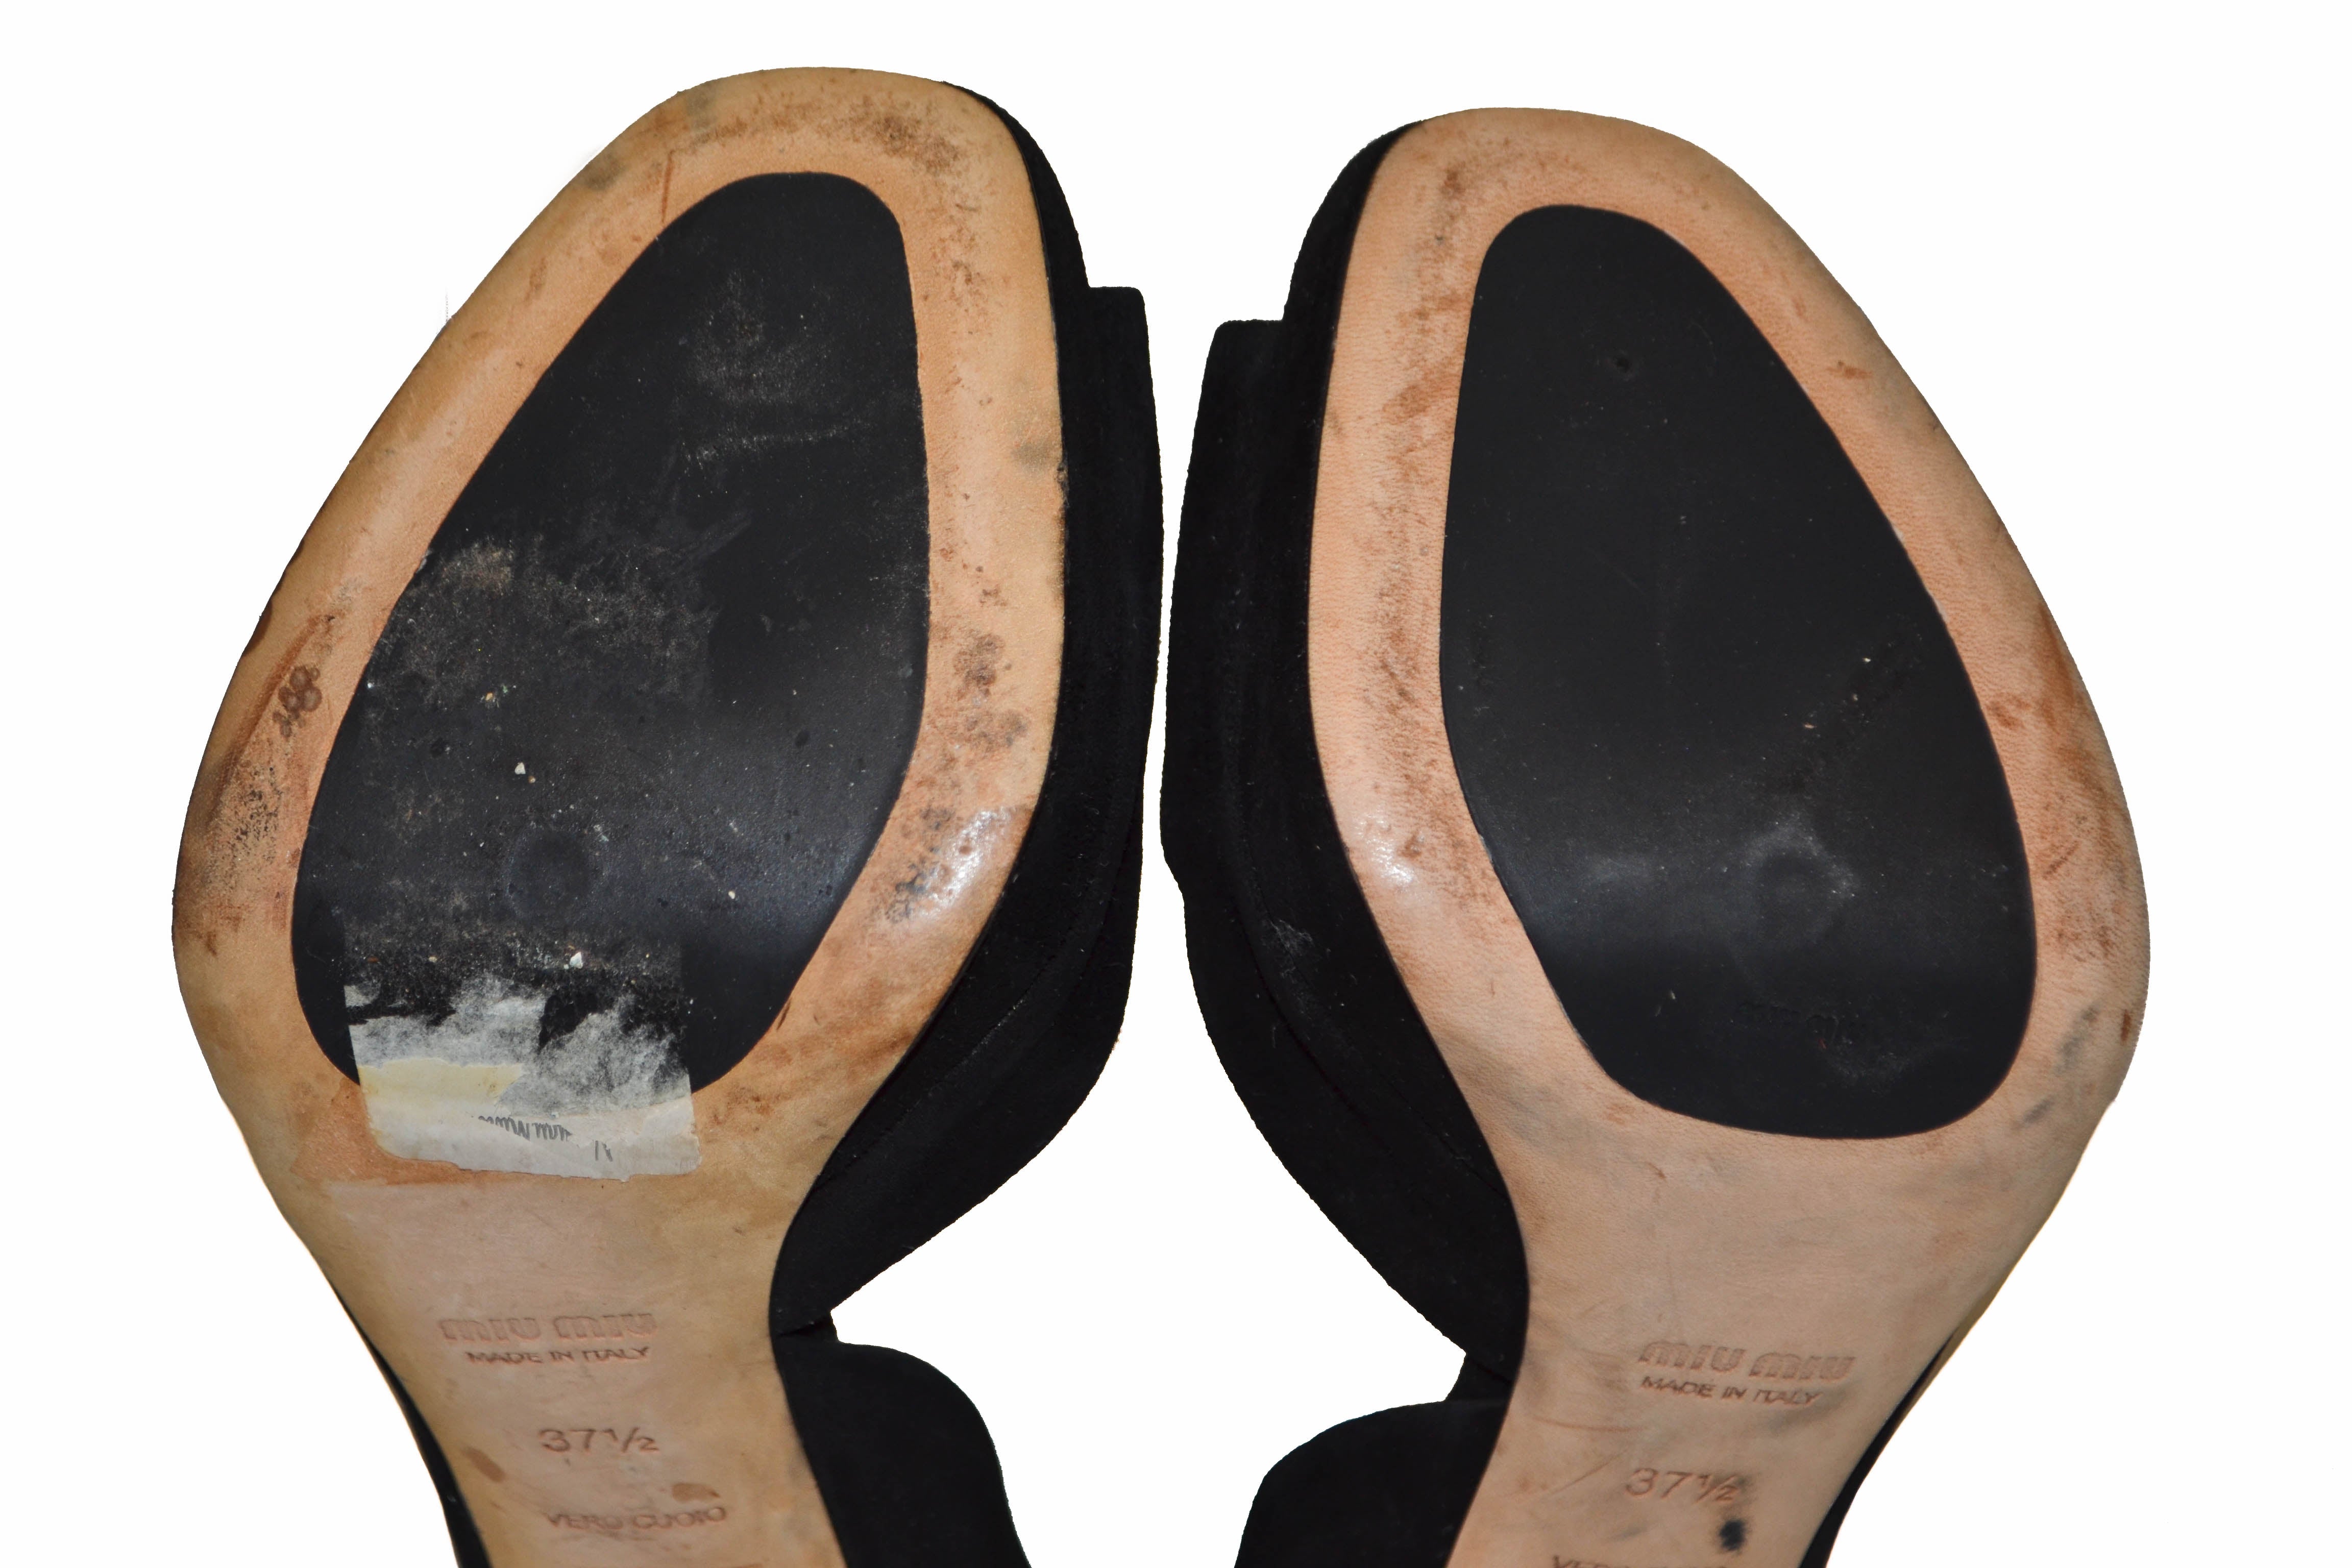 Authentic Miu Miu Black Suede Leather Pumps Shoes - Size 37.5